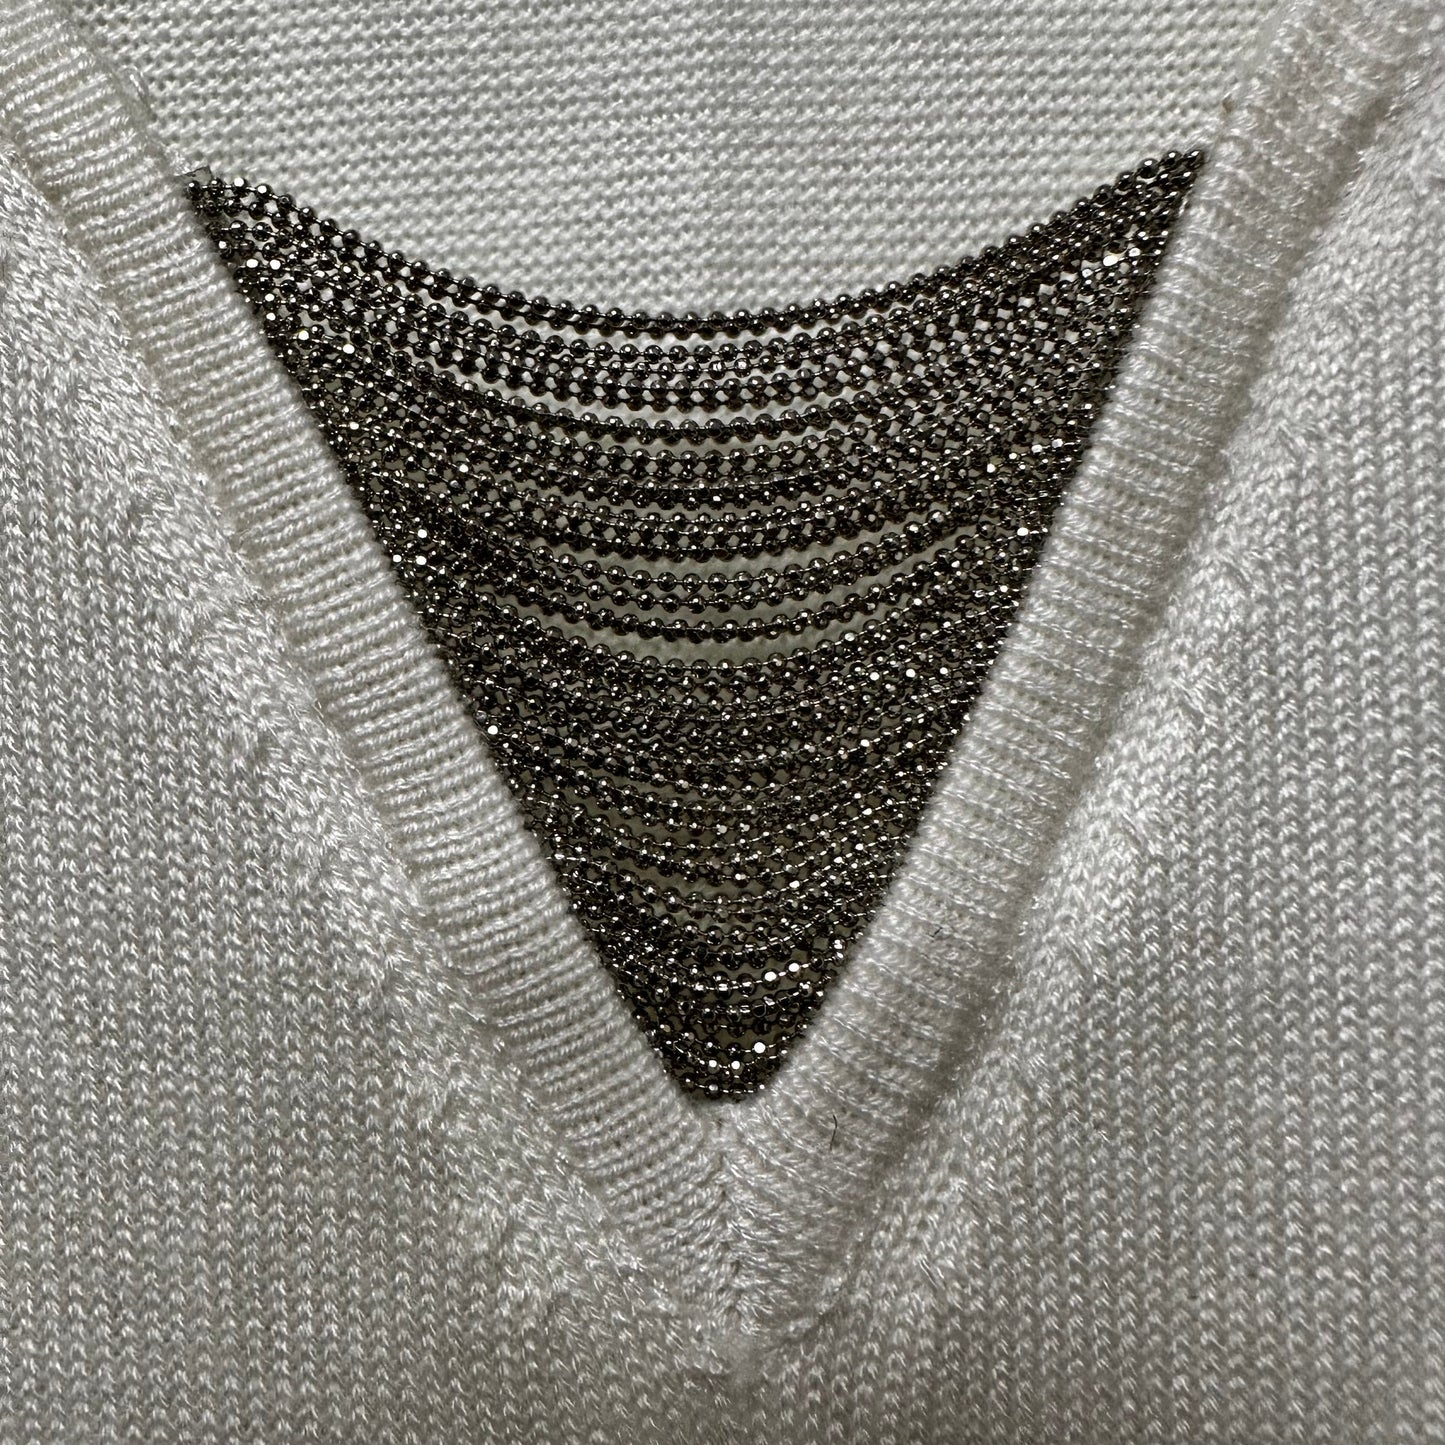 Ivory Sweater White House Black Market, Size M